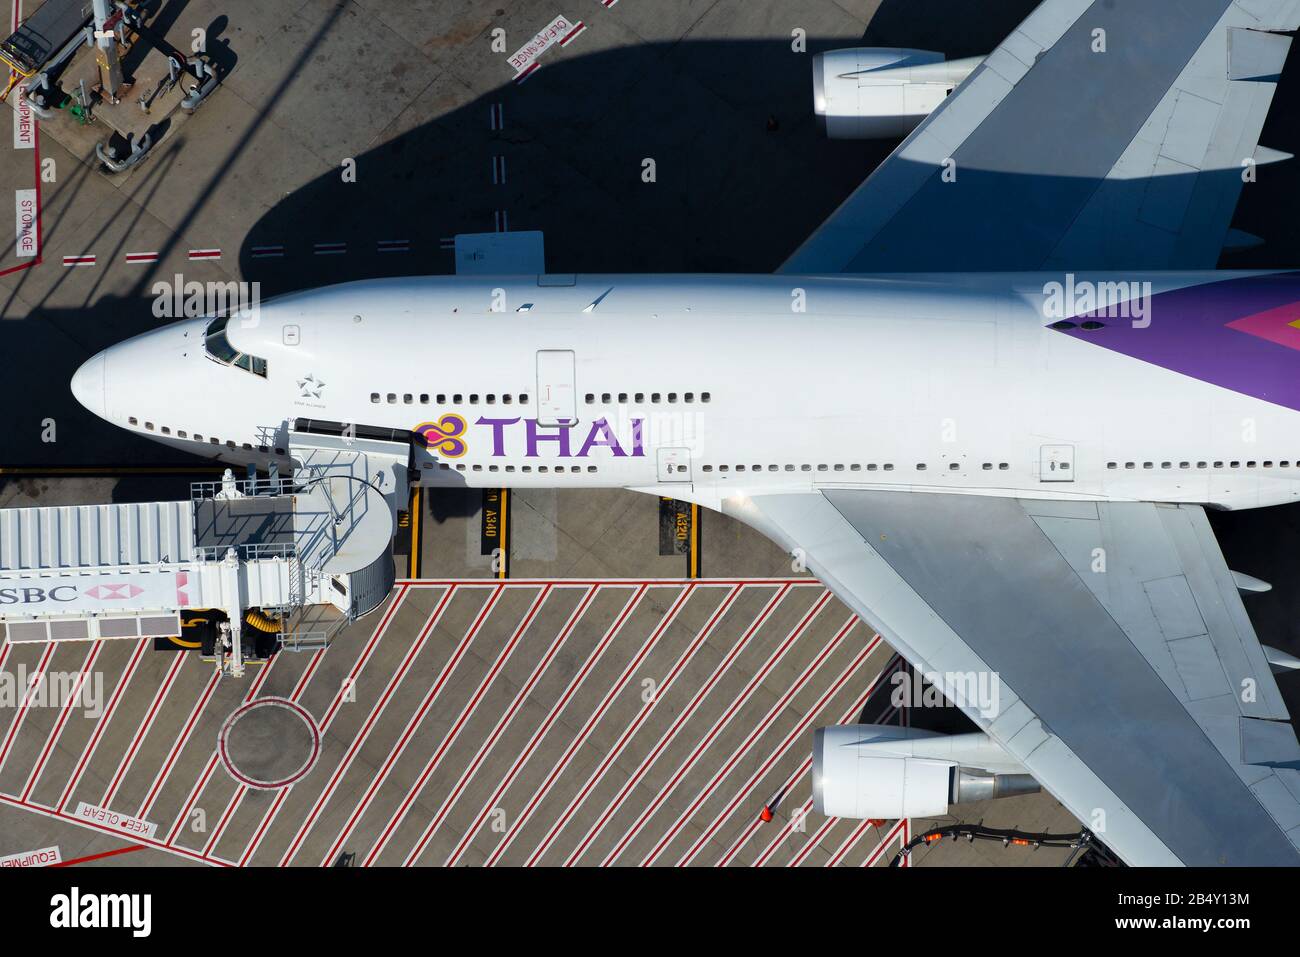 Thai Airways International Boeing 747 parcheggiata presso un cancello con ponte a getto per i passeggeri a bordo in un terminal aeroportuale. Boeing 747-400 HS-TGY. Foto Stock